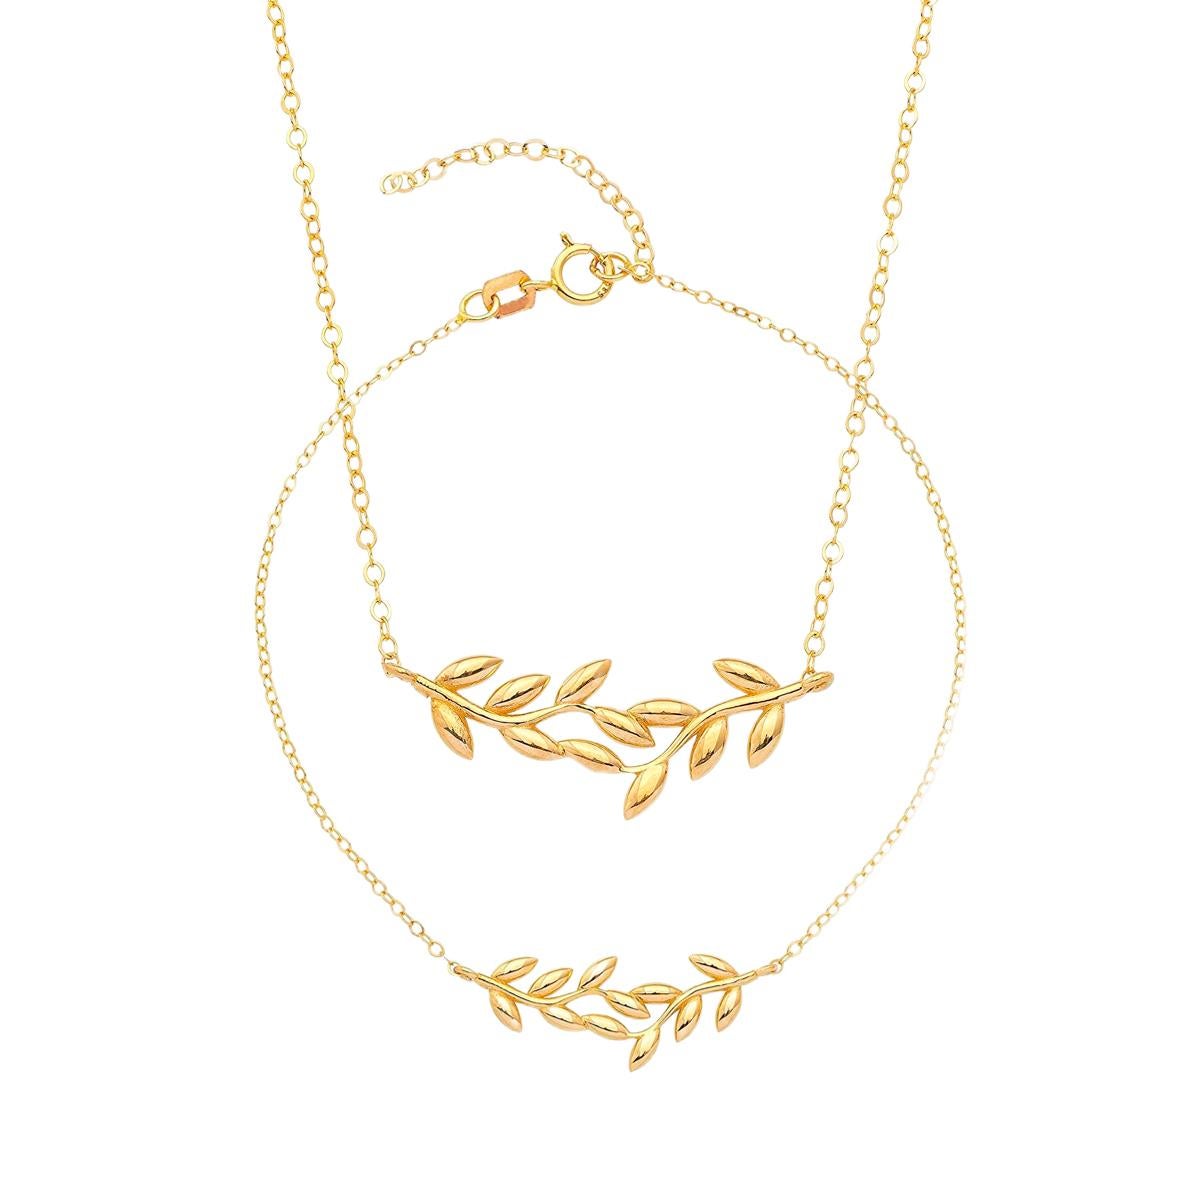  Ensemble : Collier et bracelet en chaîne en or 14 carats. Bracelet et collier en or en forme de branche d'olivier. Bracelet et collier en feuille d'or. Collier et bracelet de mariage. 

Poids total :  2.55 gr 
Poids du collier : 1.45 gr
Poids du